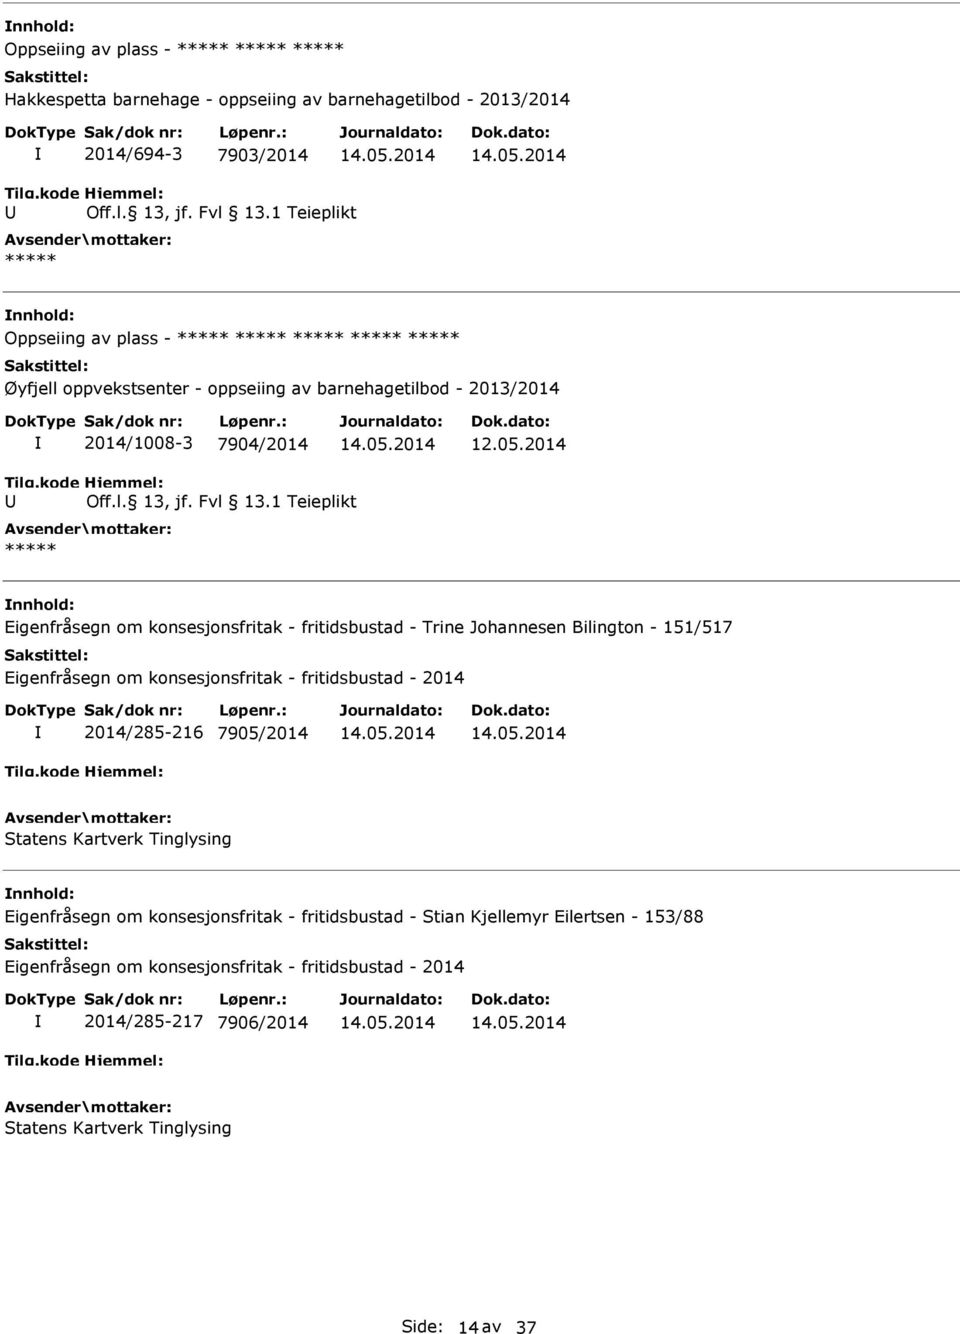 2014 nnhold: Eigenfråsegn om konsesjonsfritak - fritidsbustad - Trine Johannesen Bilington - 151/517 2014/285-216 7905/2014